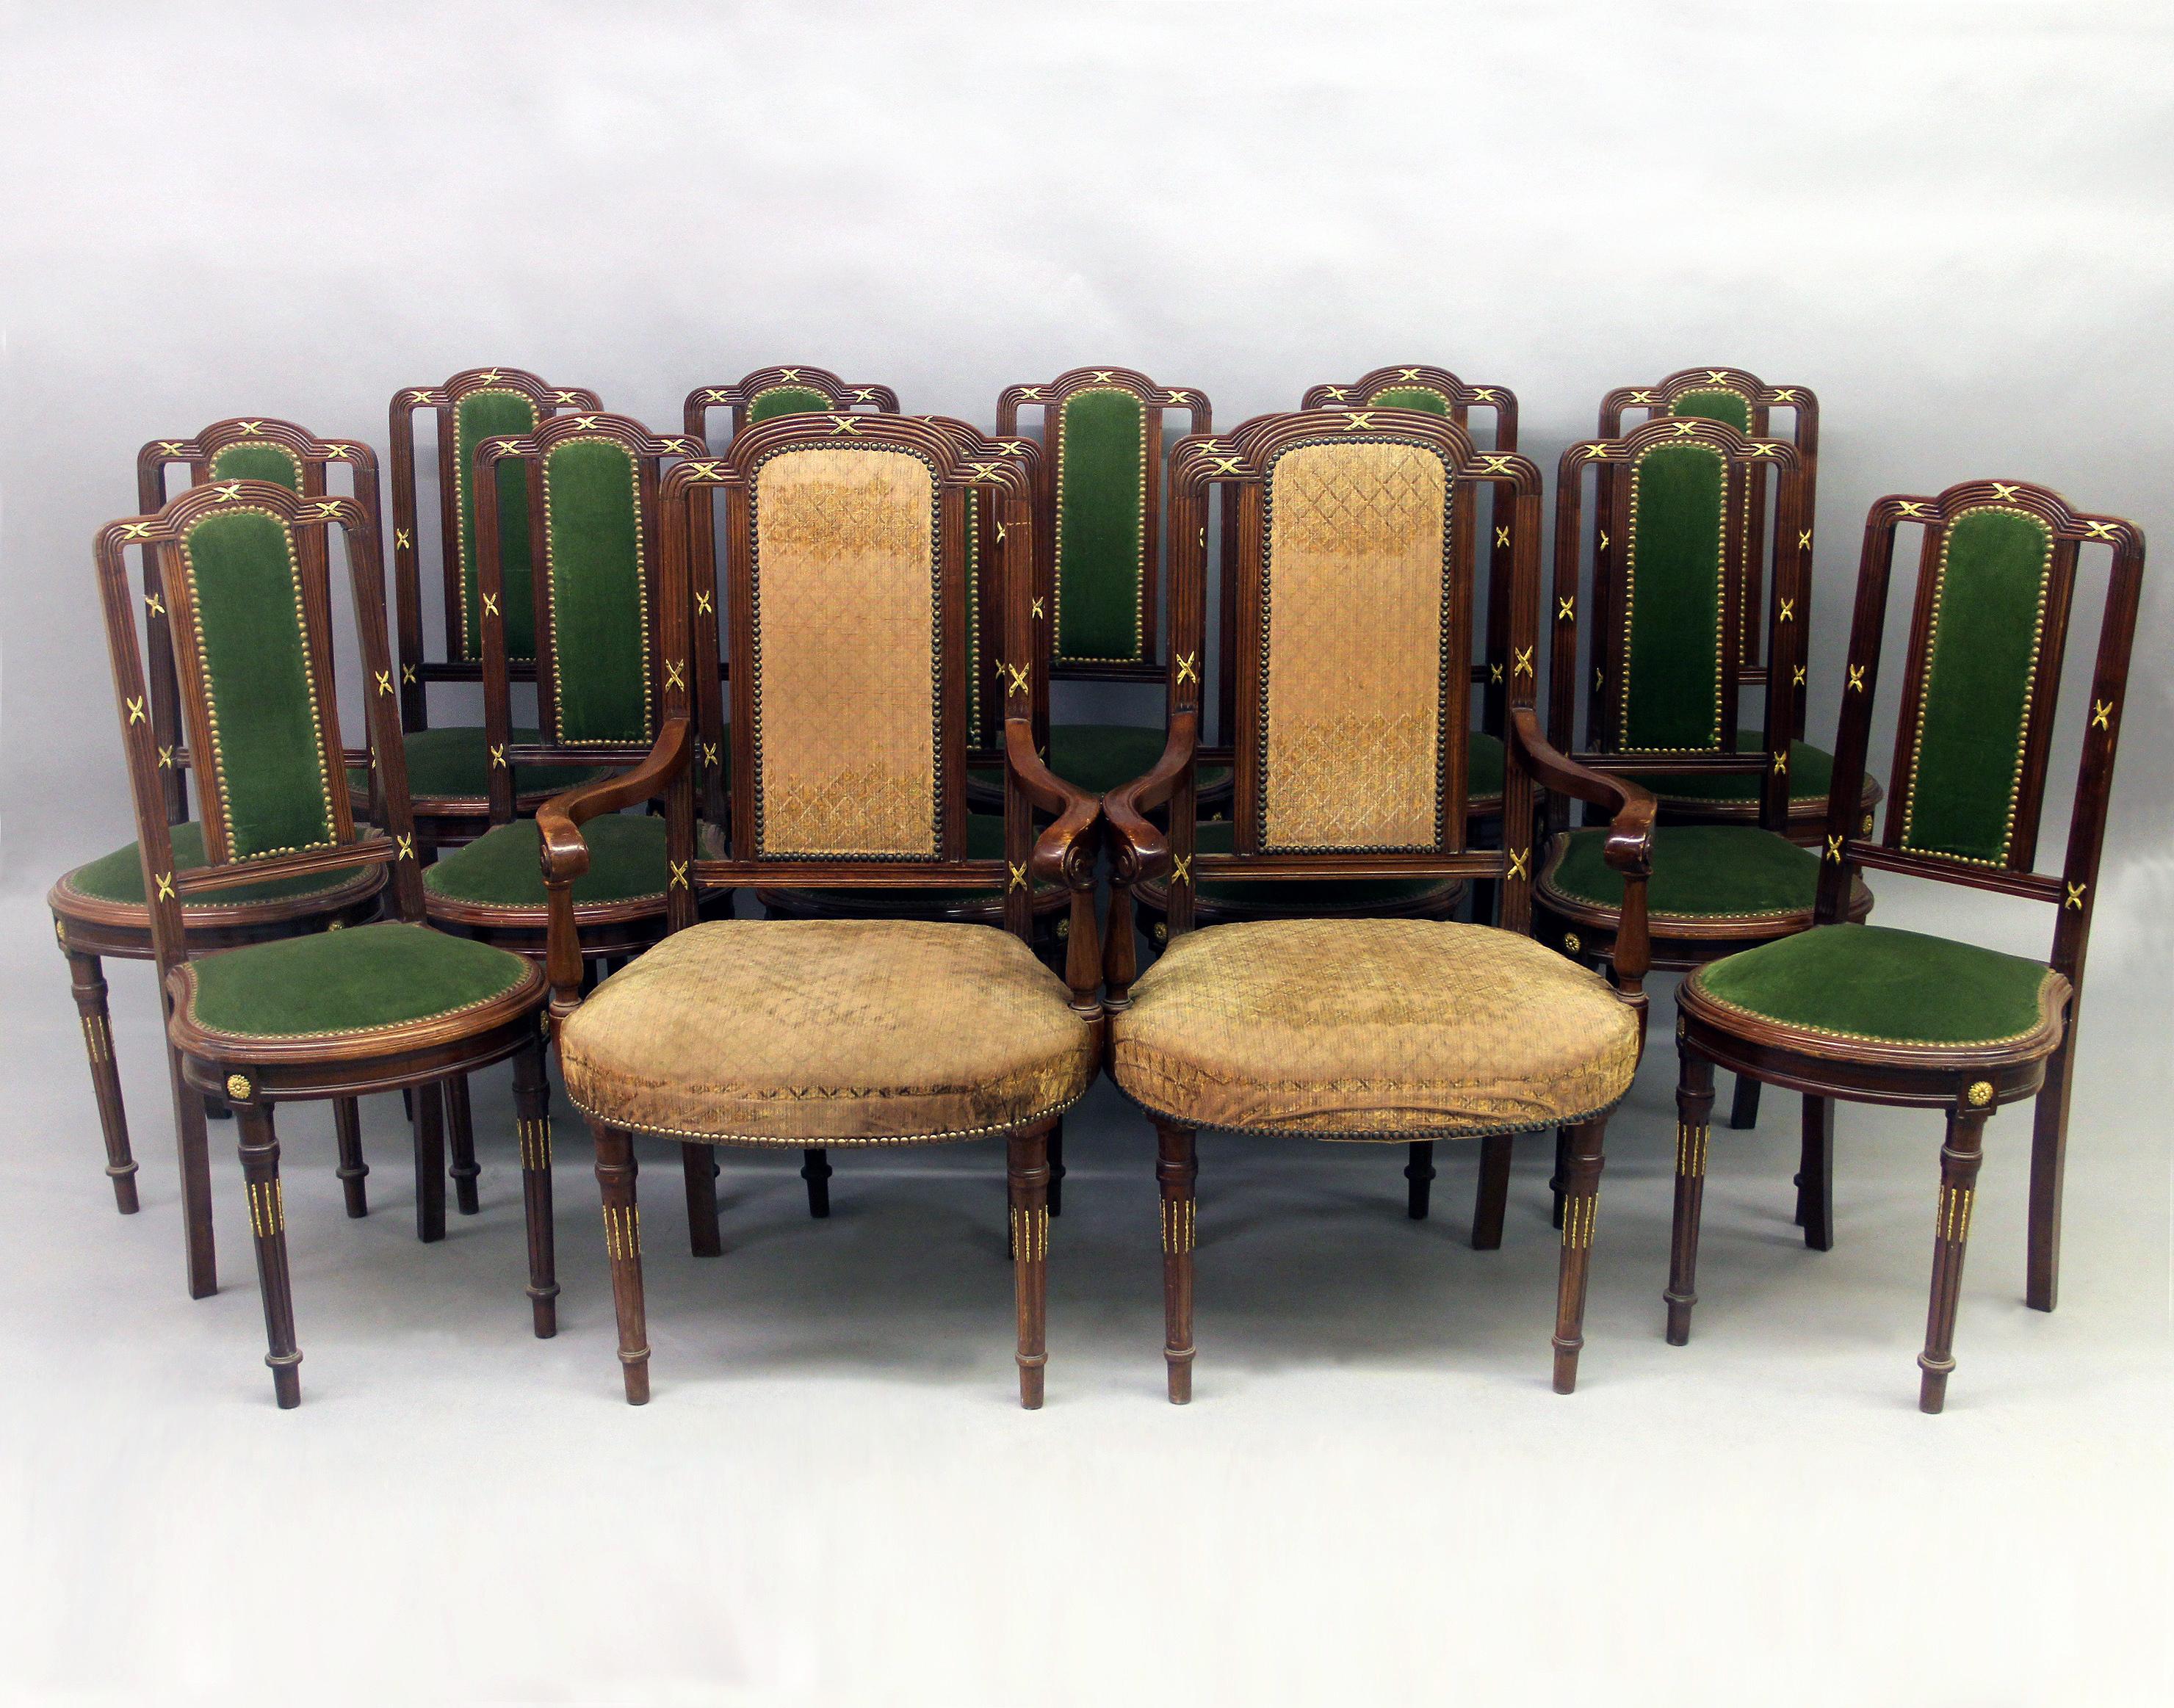 Ensemble de quatorze chaises de salle à manger de style transitionnel de la fin du XIXe siècle, montées sur bronze doré

Numéro d'article 8476

Comprend deux chaises à accoudoir et douze chaises d'appoint, avec des dossiers rectangulaires et des